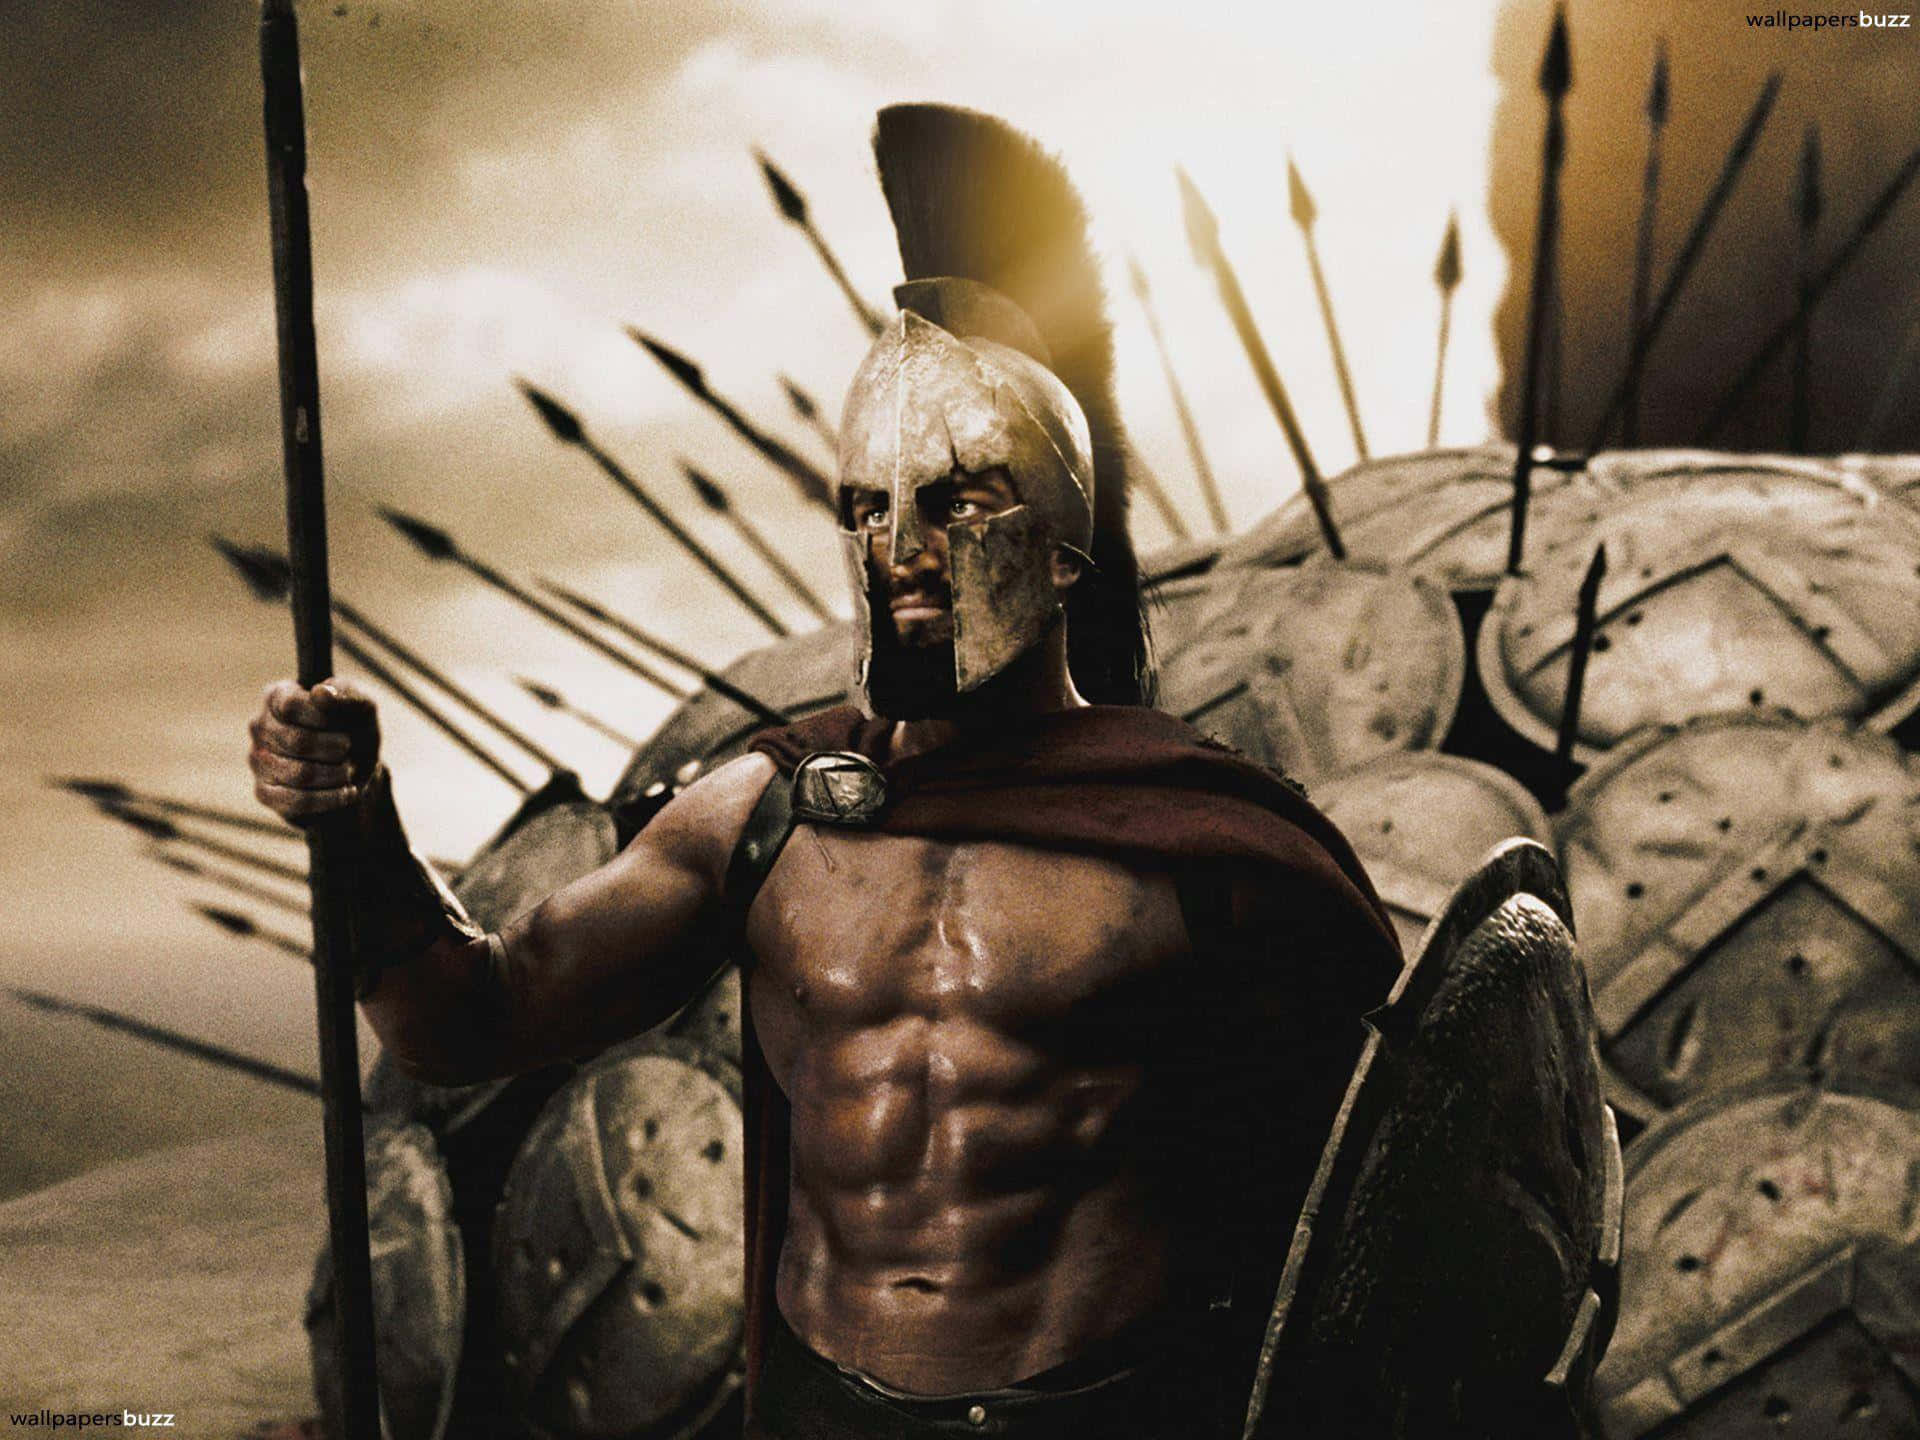 En modig spartanersoldat står øverst på en bakke i en klassisk stilling, klar til at tage imod enhver udfordring. Wallpaper